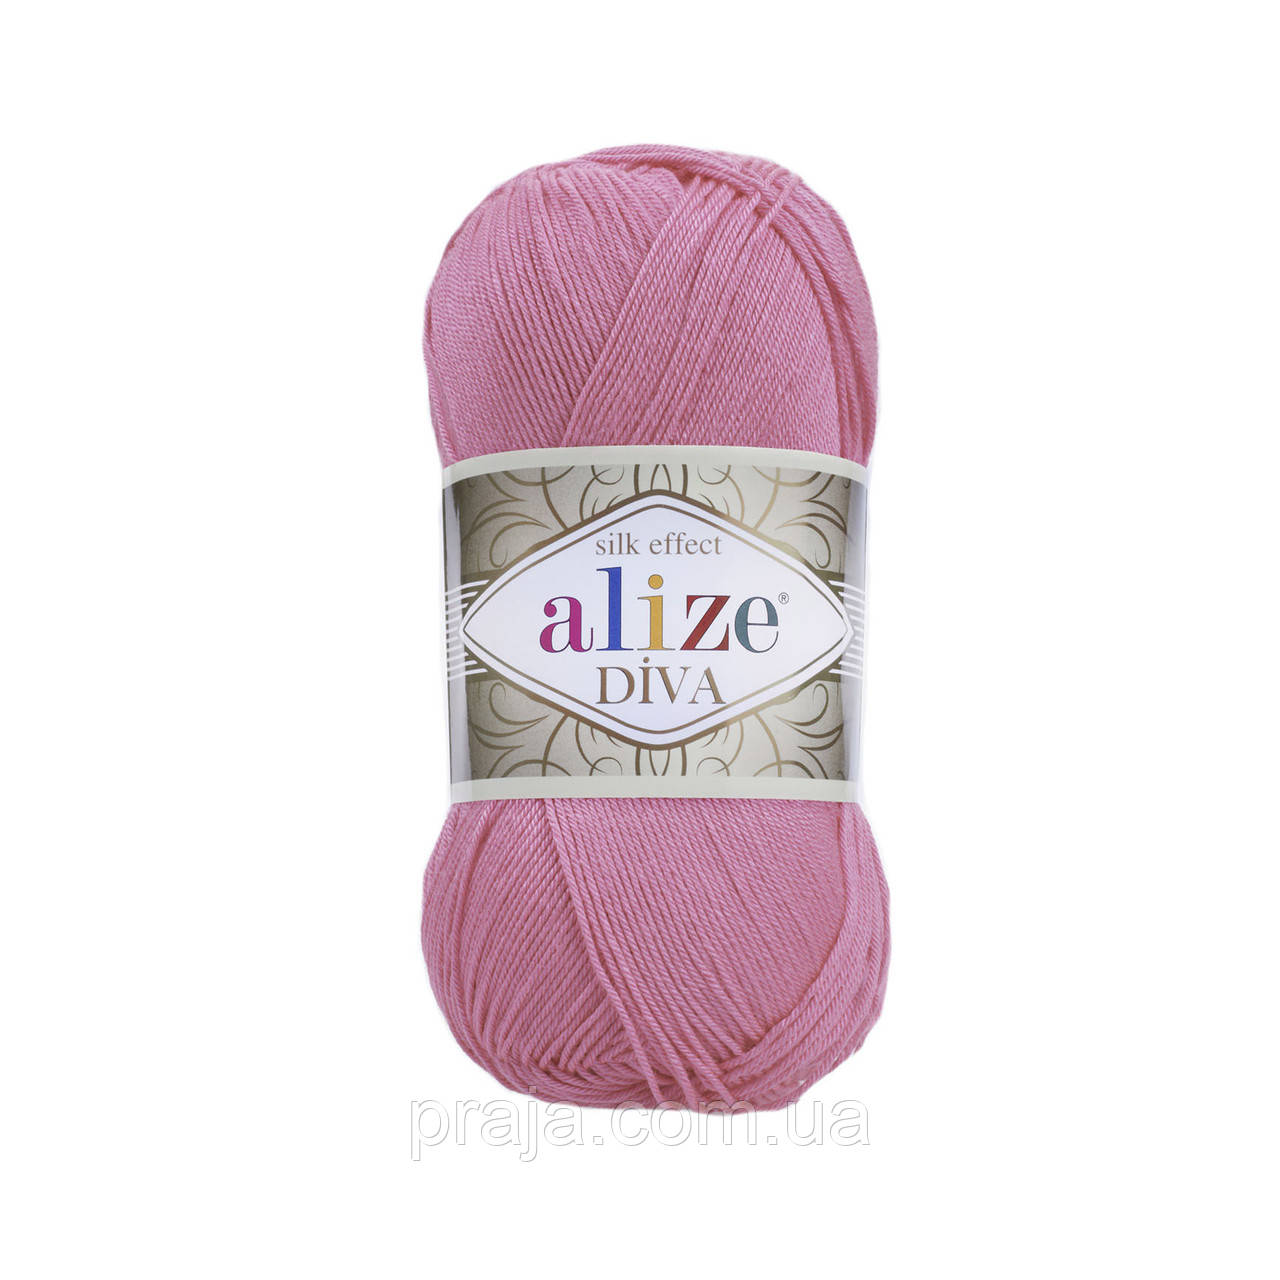 Пряжа Alize Diva(Діва) - 178 рожевий